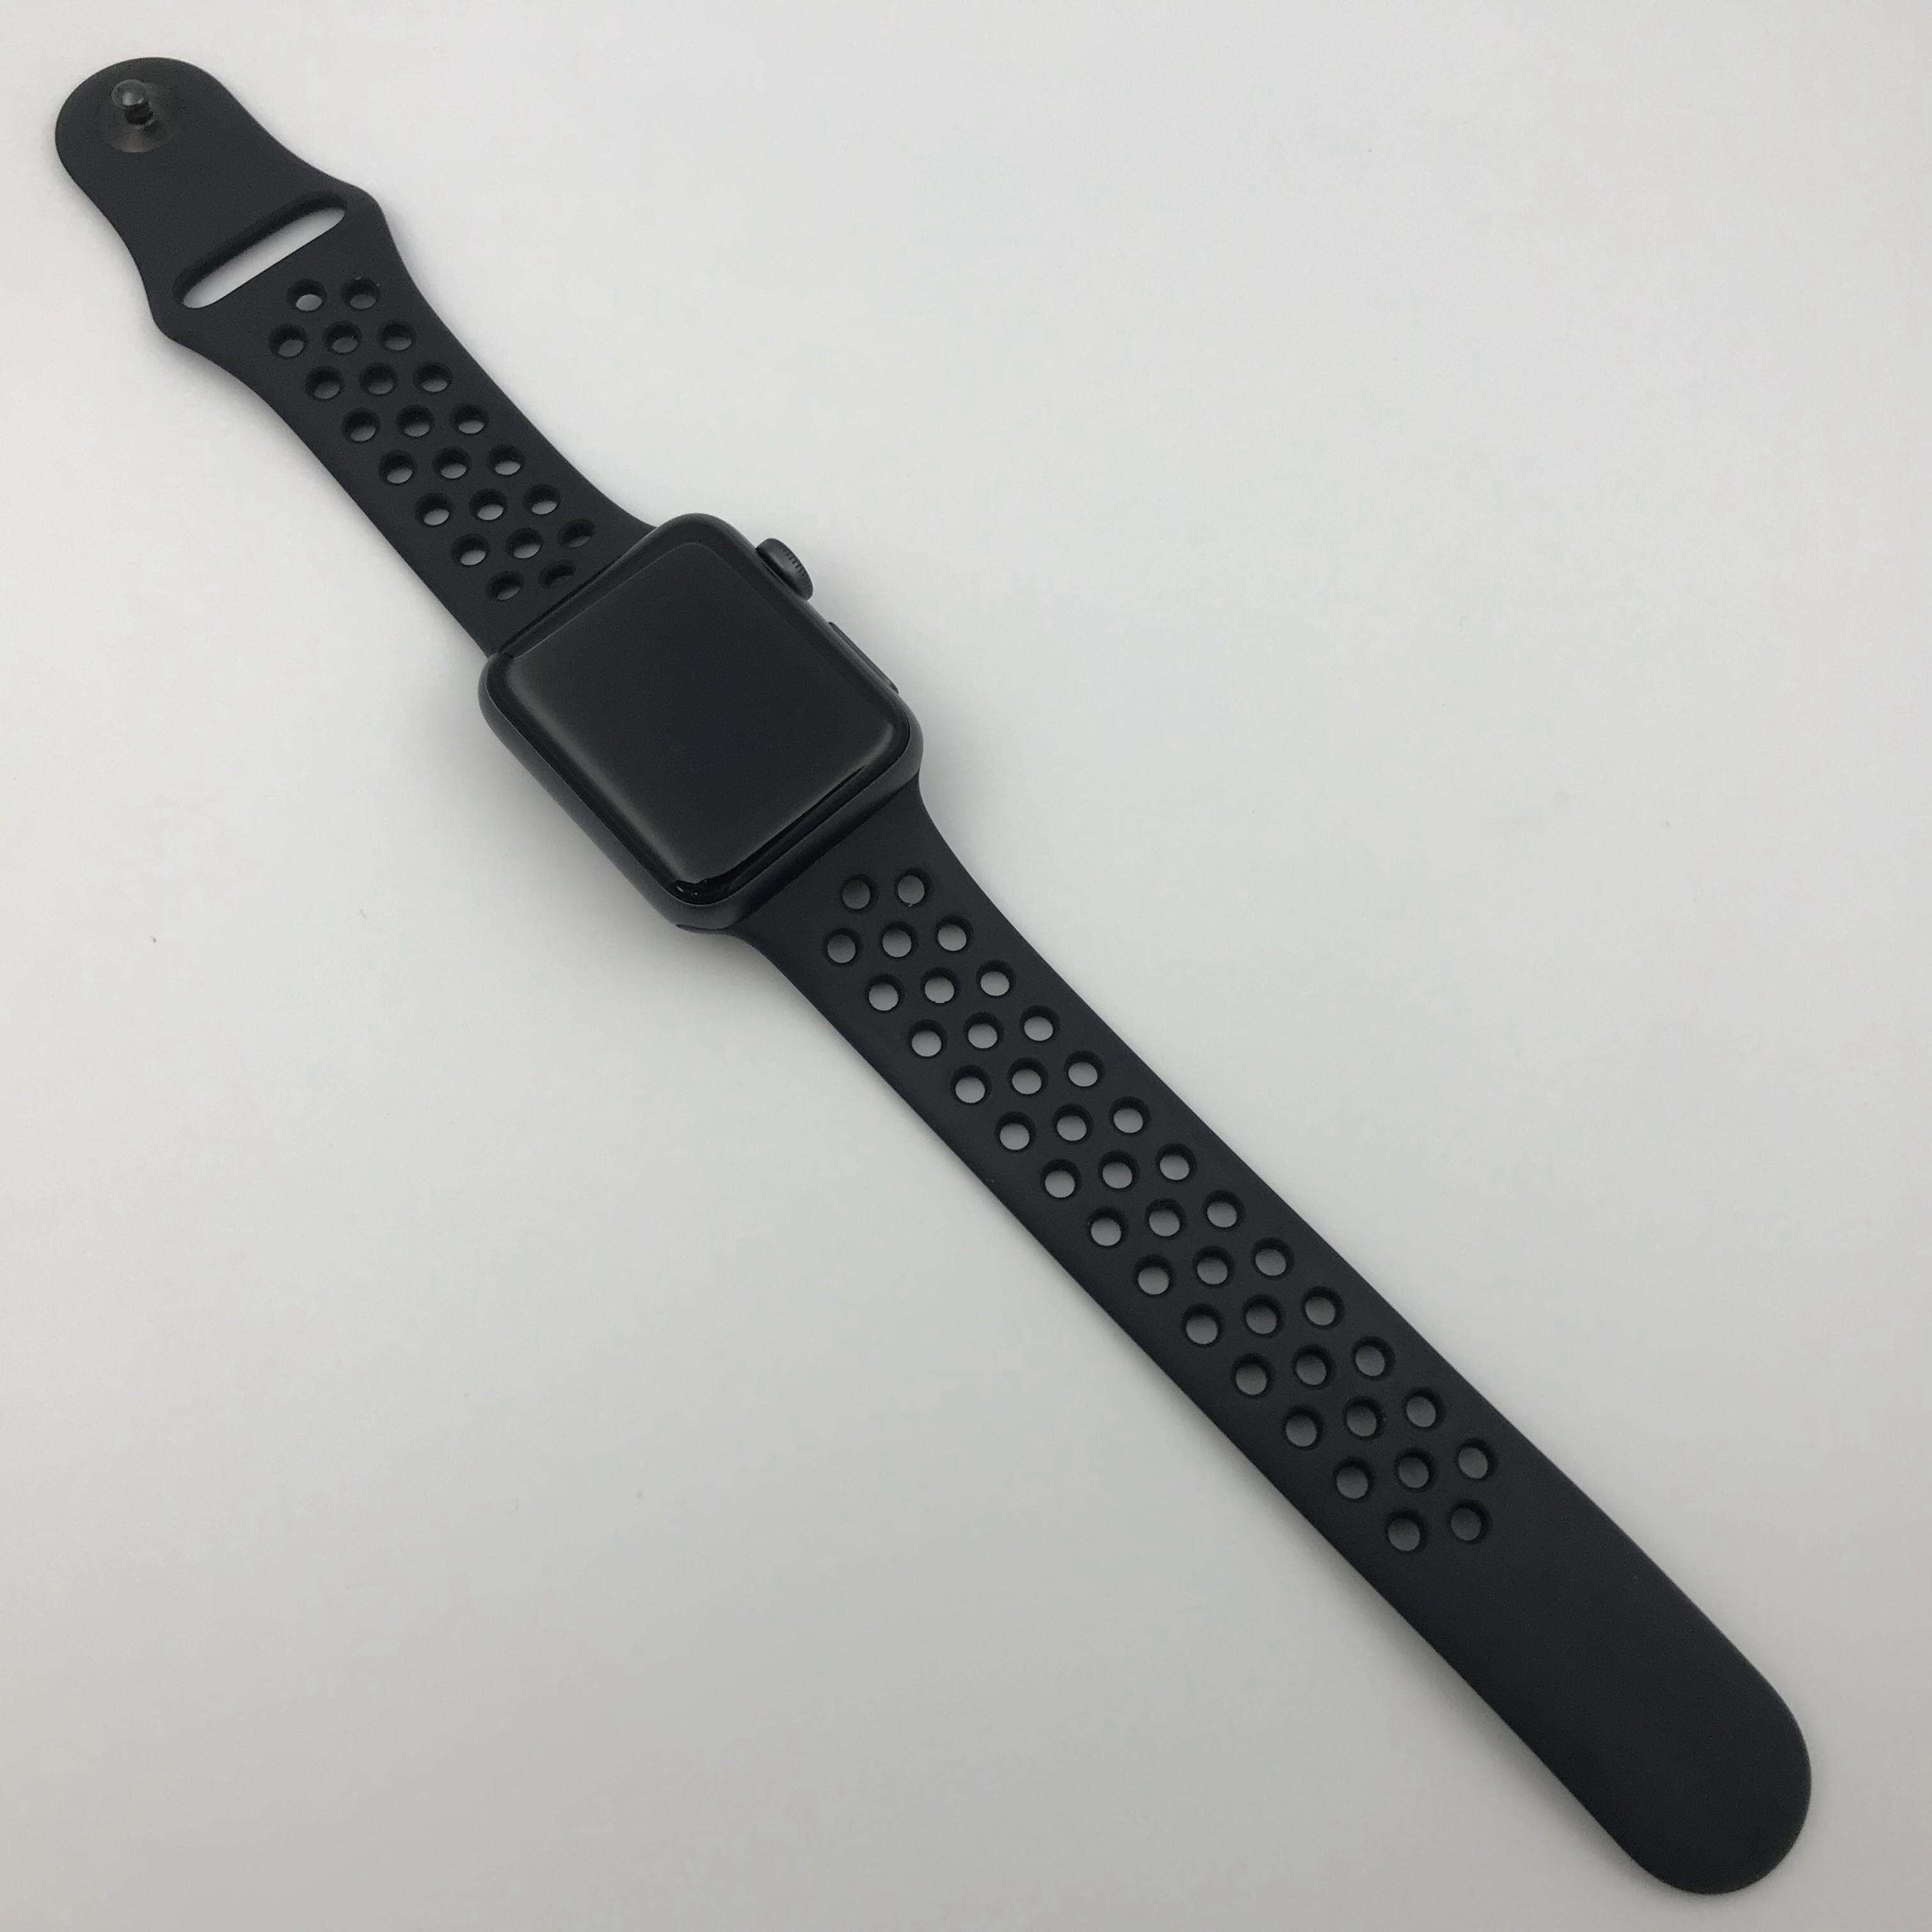 Apple Watch Series 3 铝金属表壳 38MM 国行蜂窝版